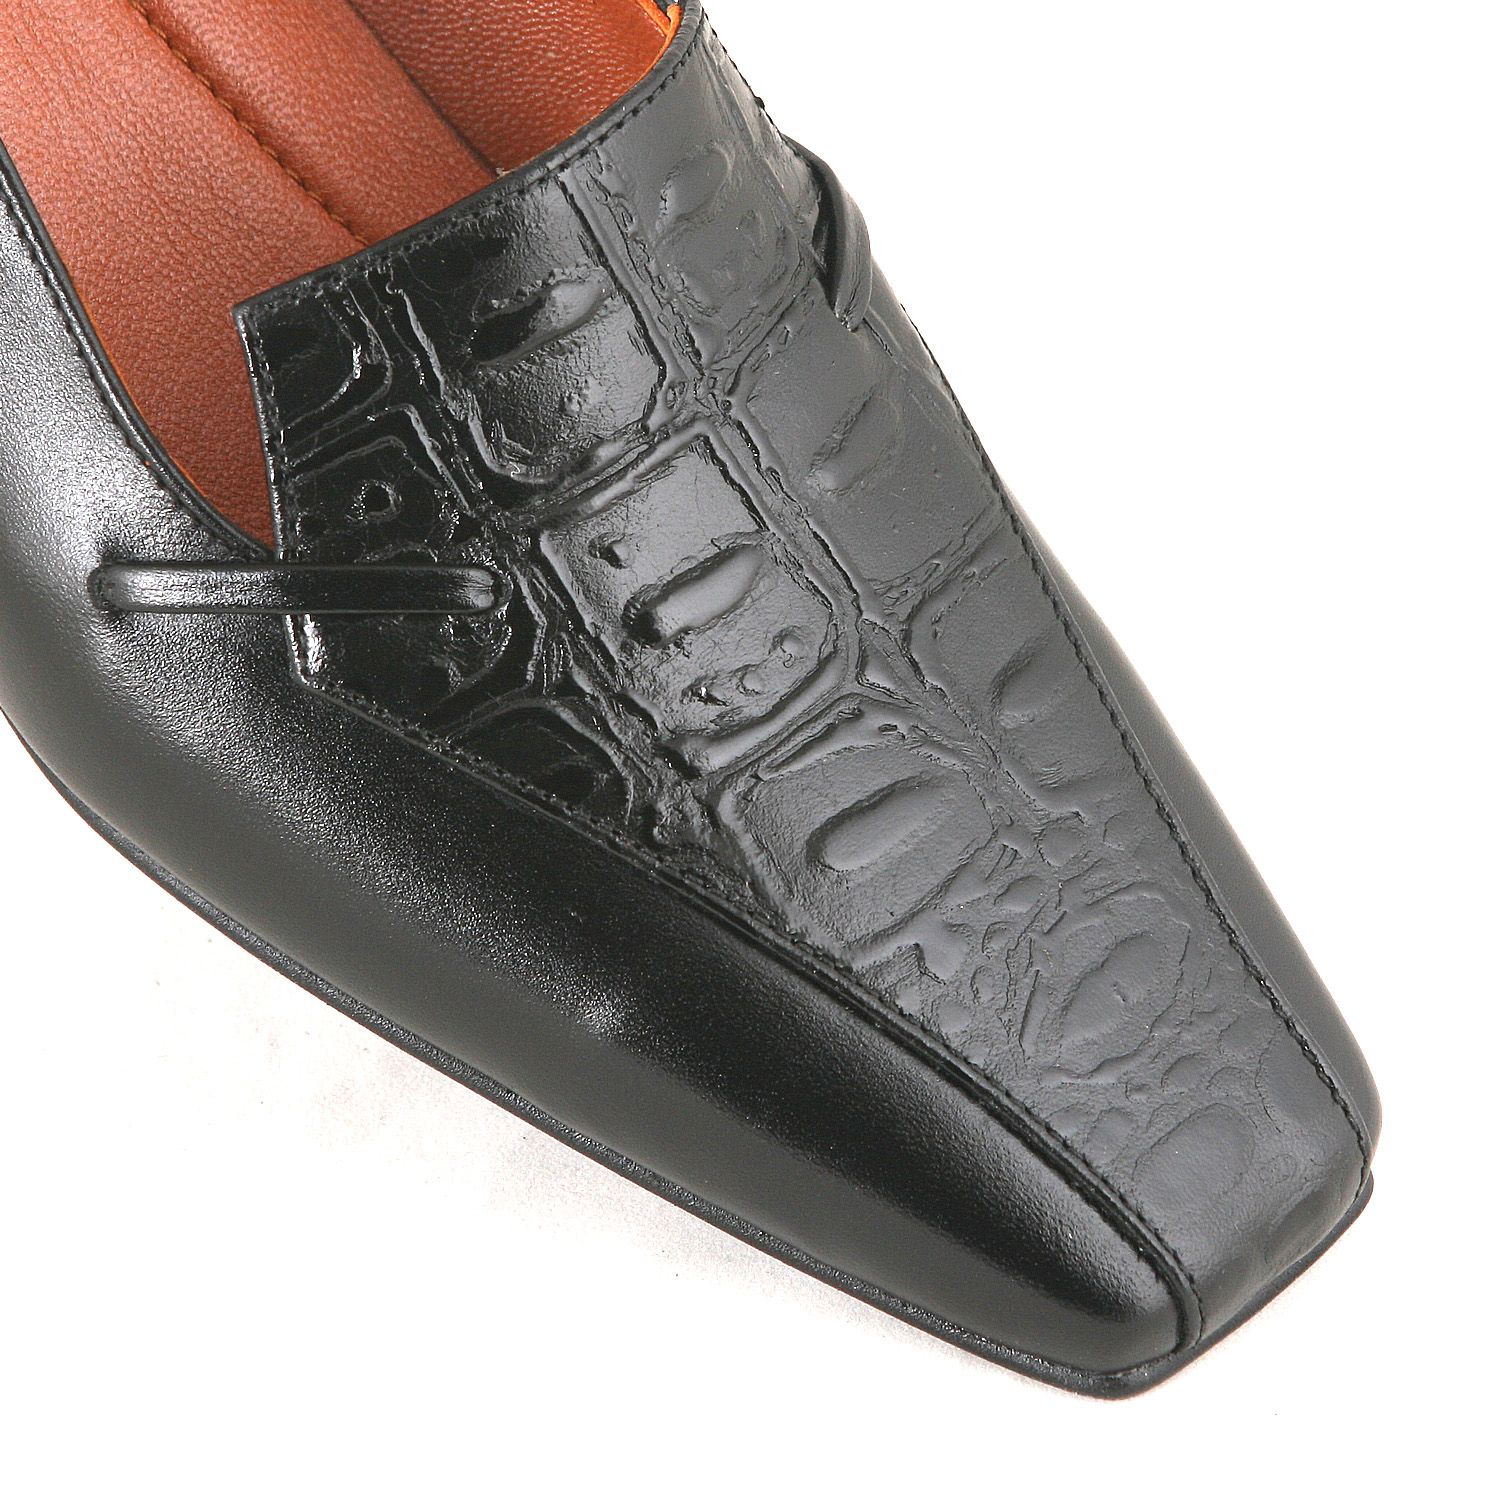 ست کیف و کفش زنانه چرم یلسان مدل راشا کد ABIGEL-GAN-929-msk -  - 8